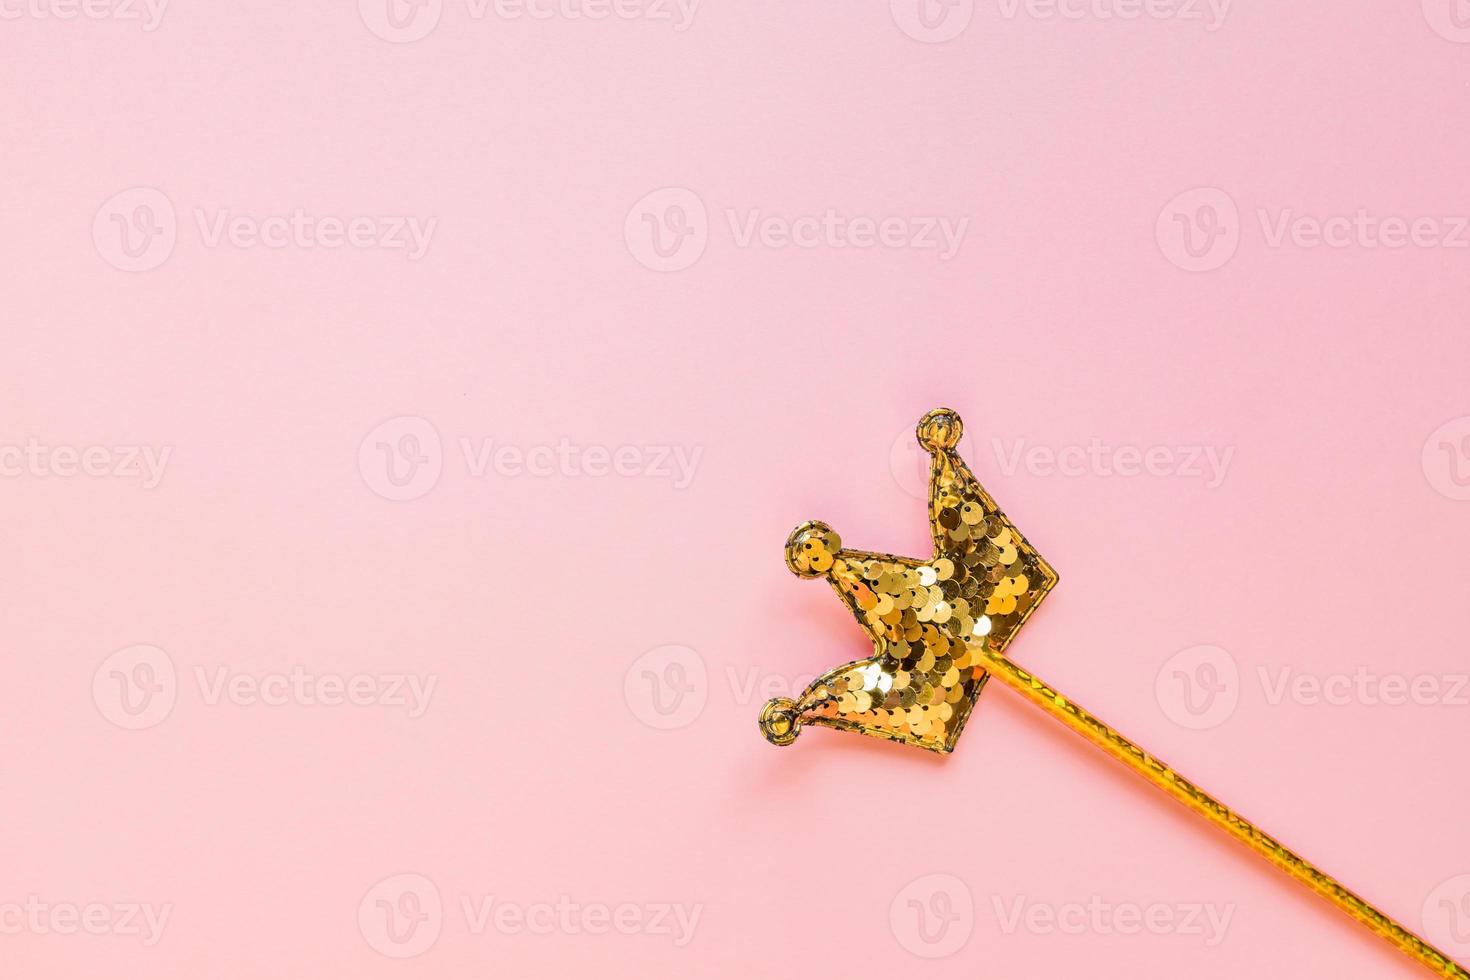 gyllene magi pinne från paljetter i krona form på pastell rosa backgeound. kreativ platt lägga i minimal stil foto